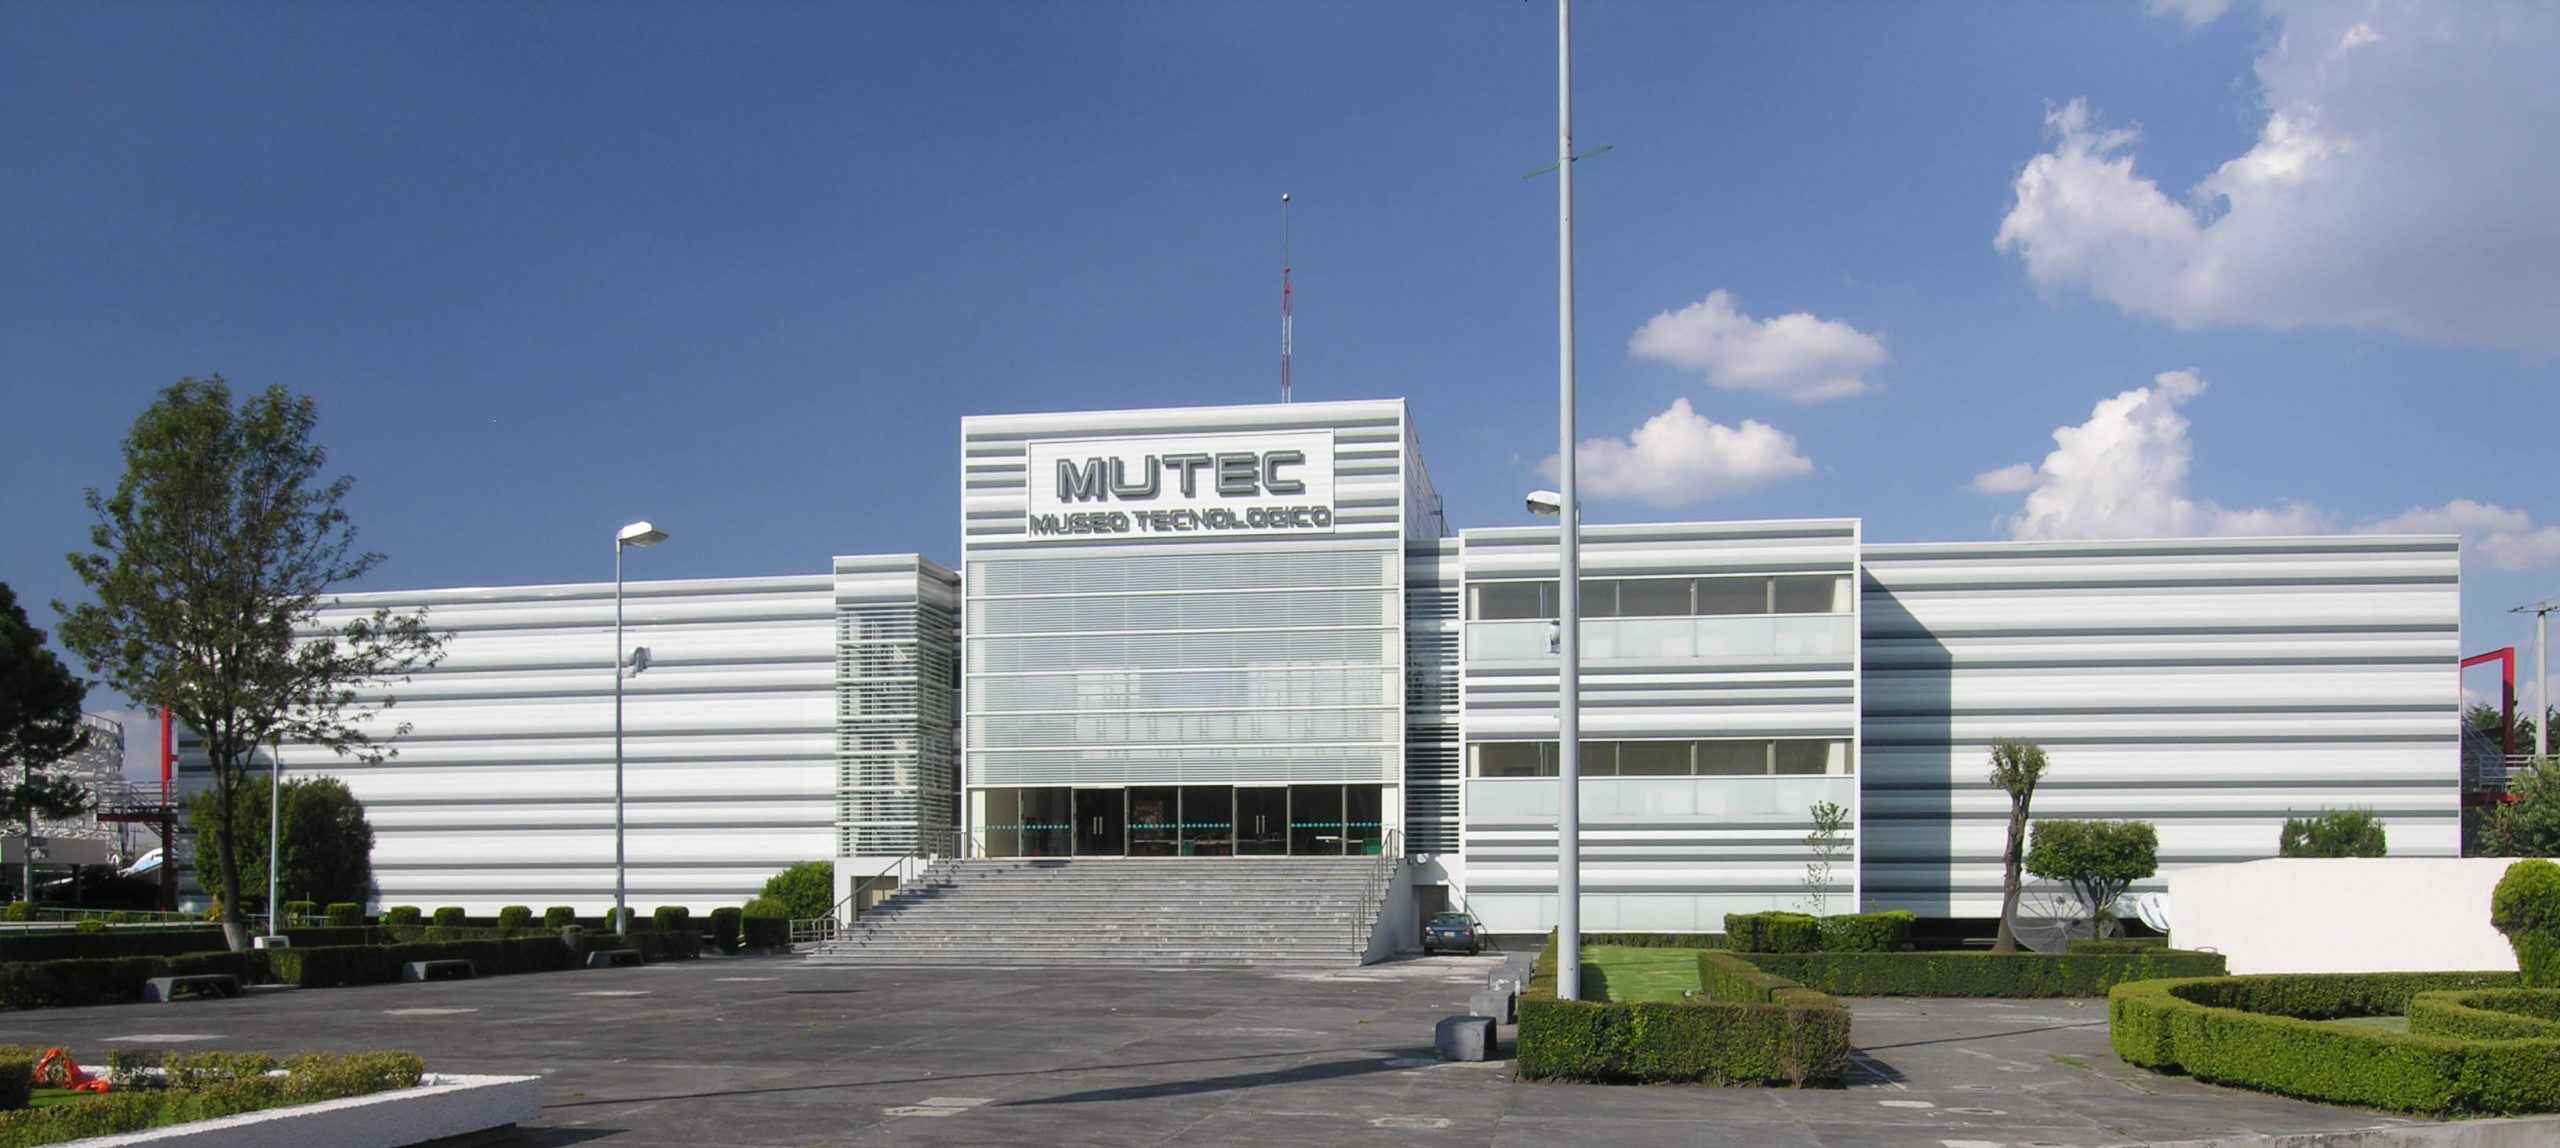 En 2018 estará listo museo que sustituirá al Mutec - MUTEC scaled